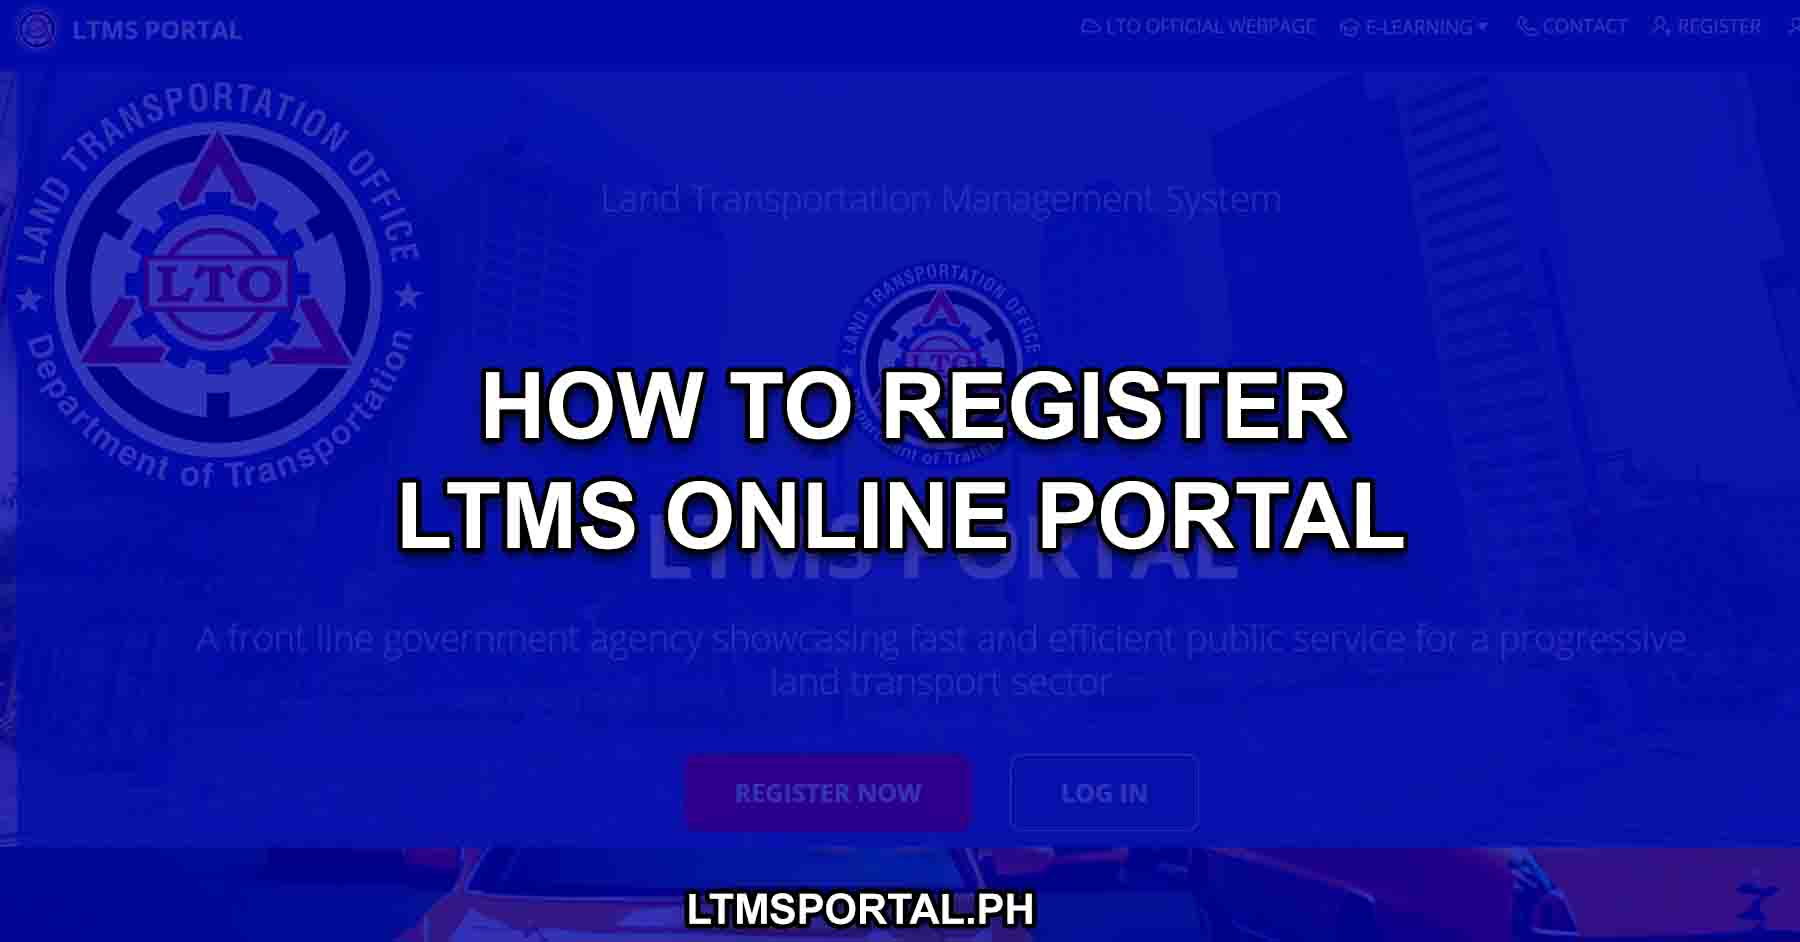 ltms portal registration guide to online lto register